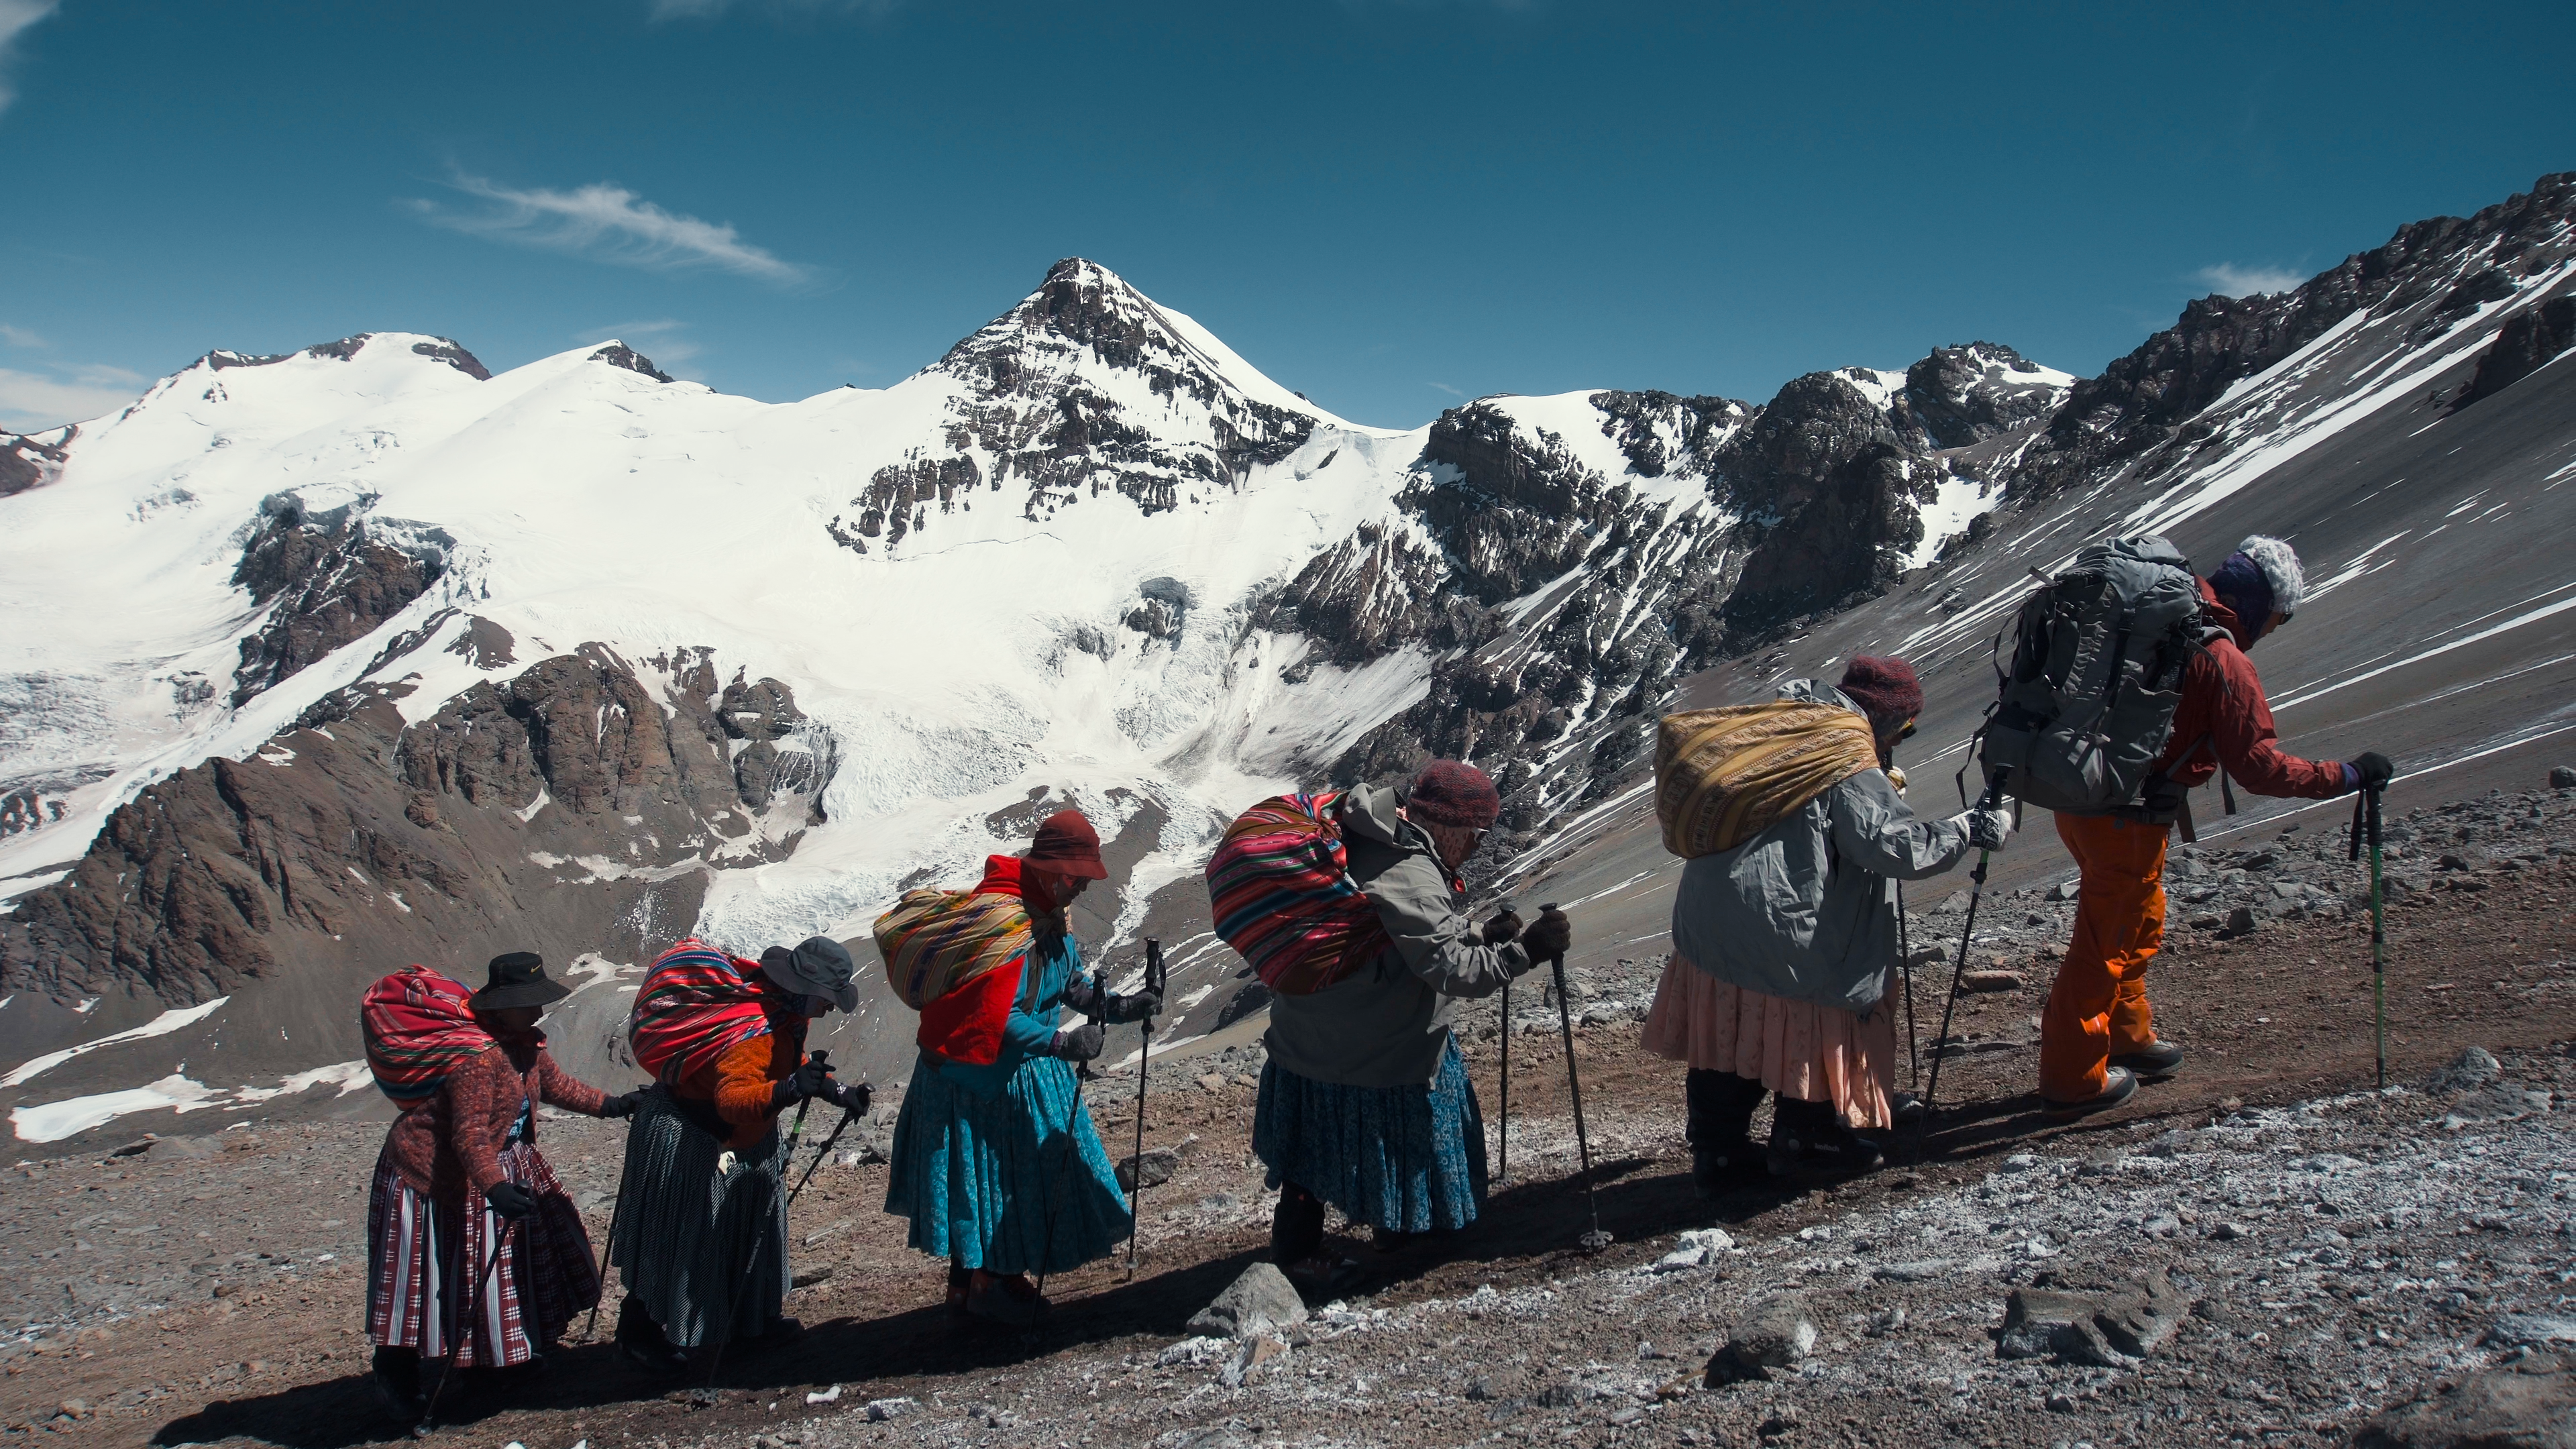 Cholitas Escaladoras: che cosa può insegnarci la storia di cinque scalatrici indigene